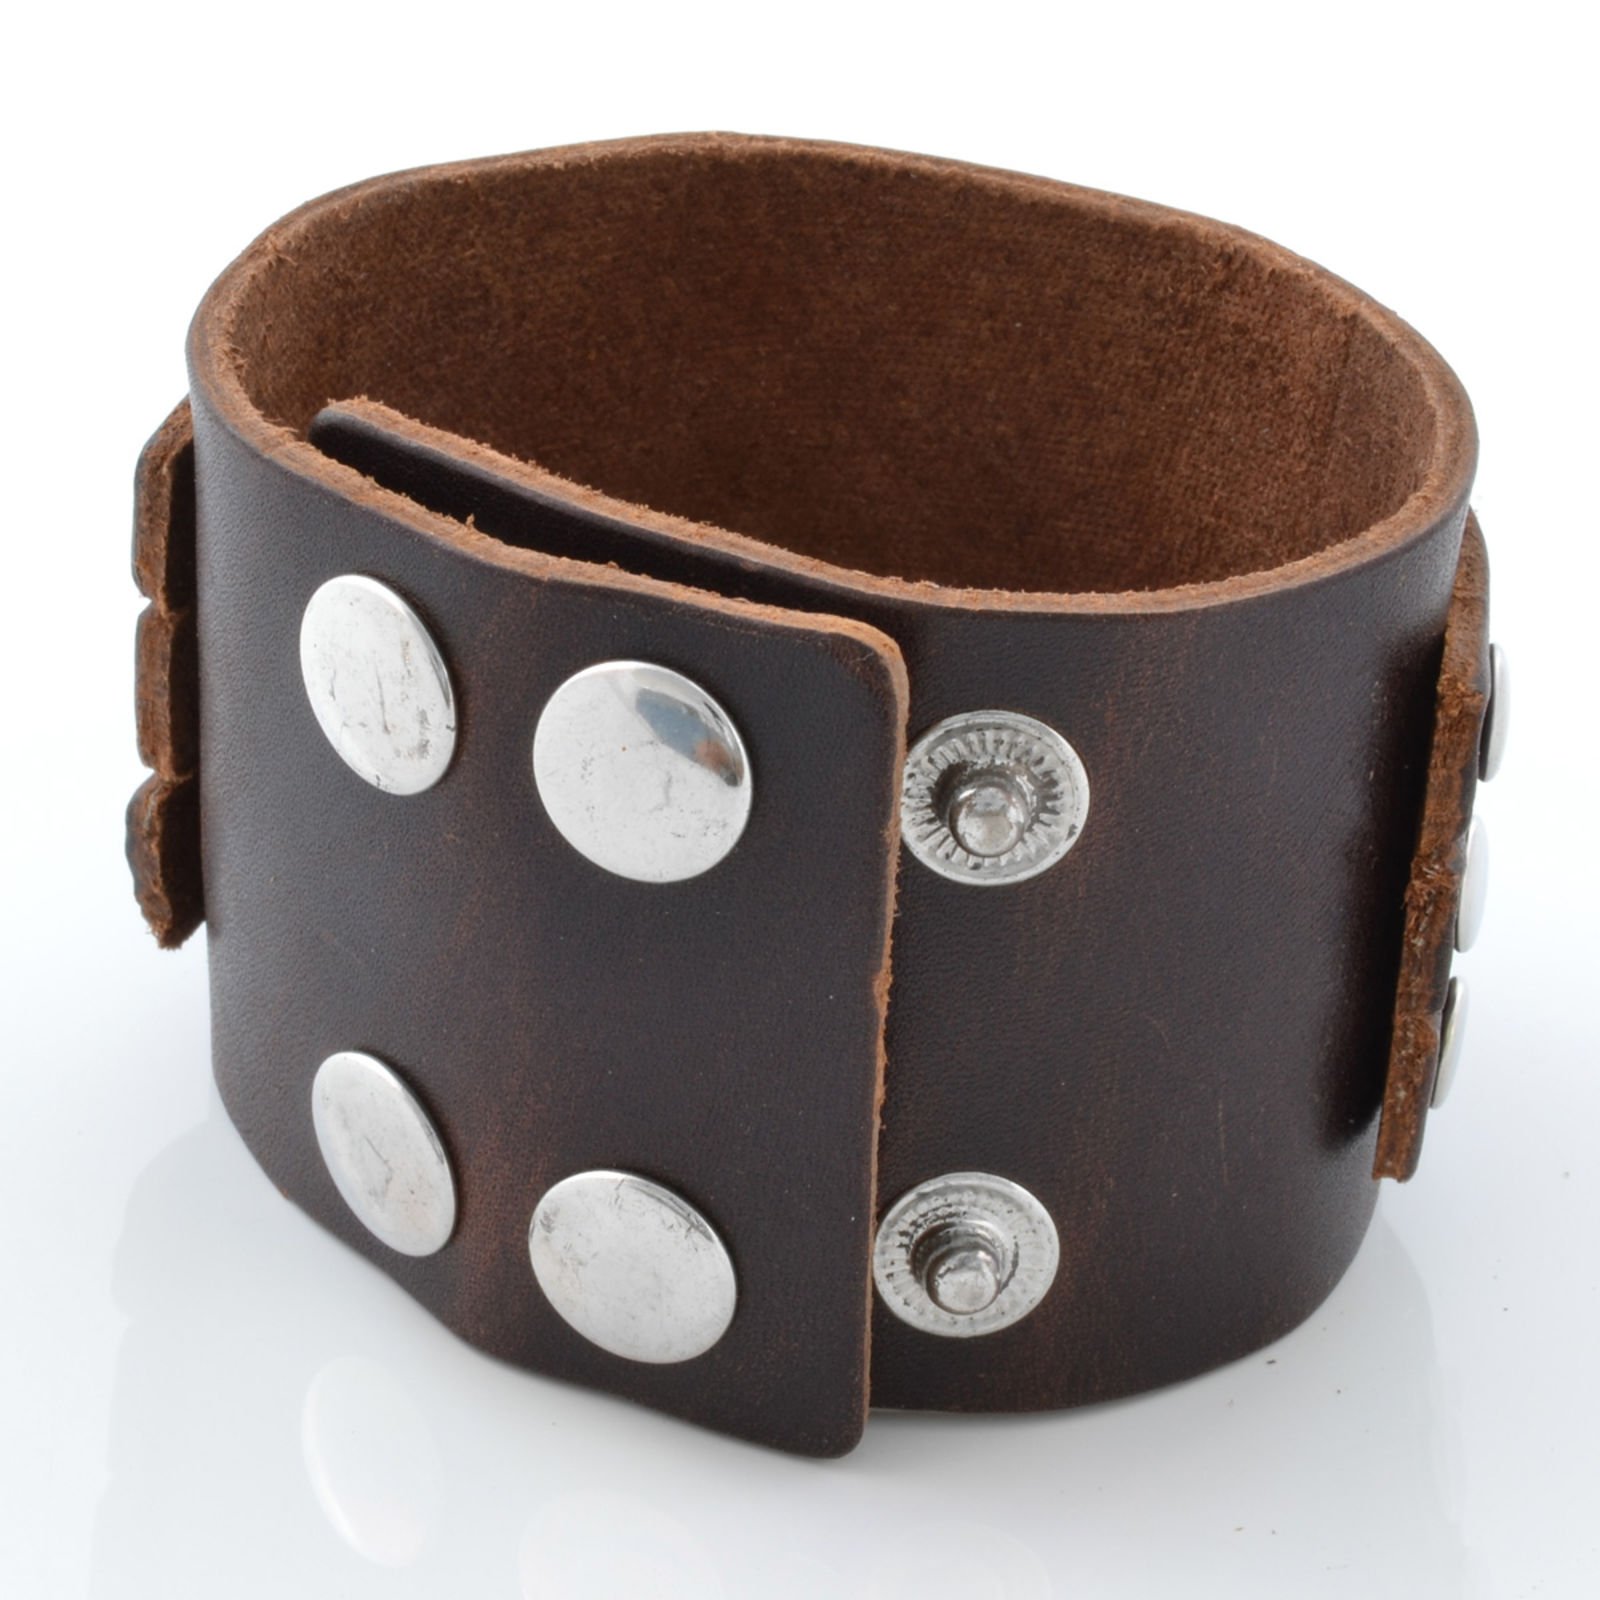 Leather Cuff Bracelet for Woman Wide Wrist Cuff Leather  Etsy  Leather  wrist cuff Leather bracelets women Leather bracelet